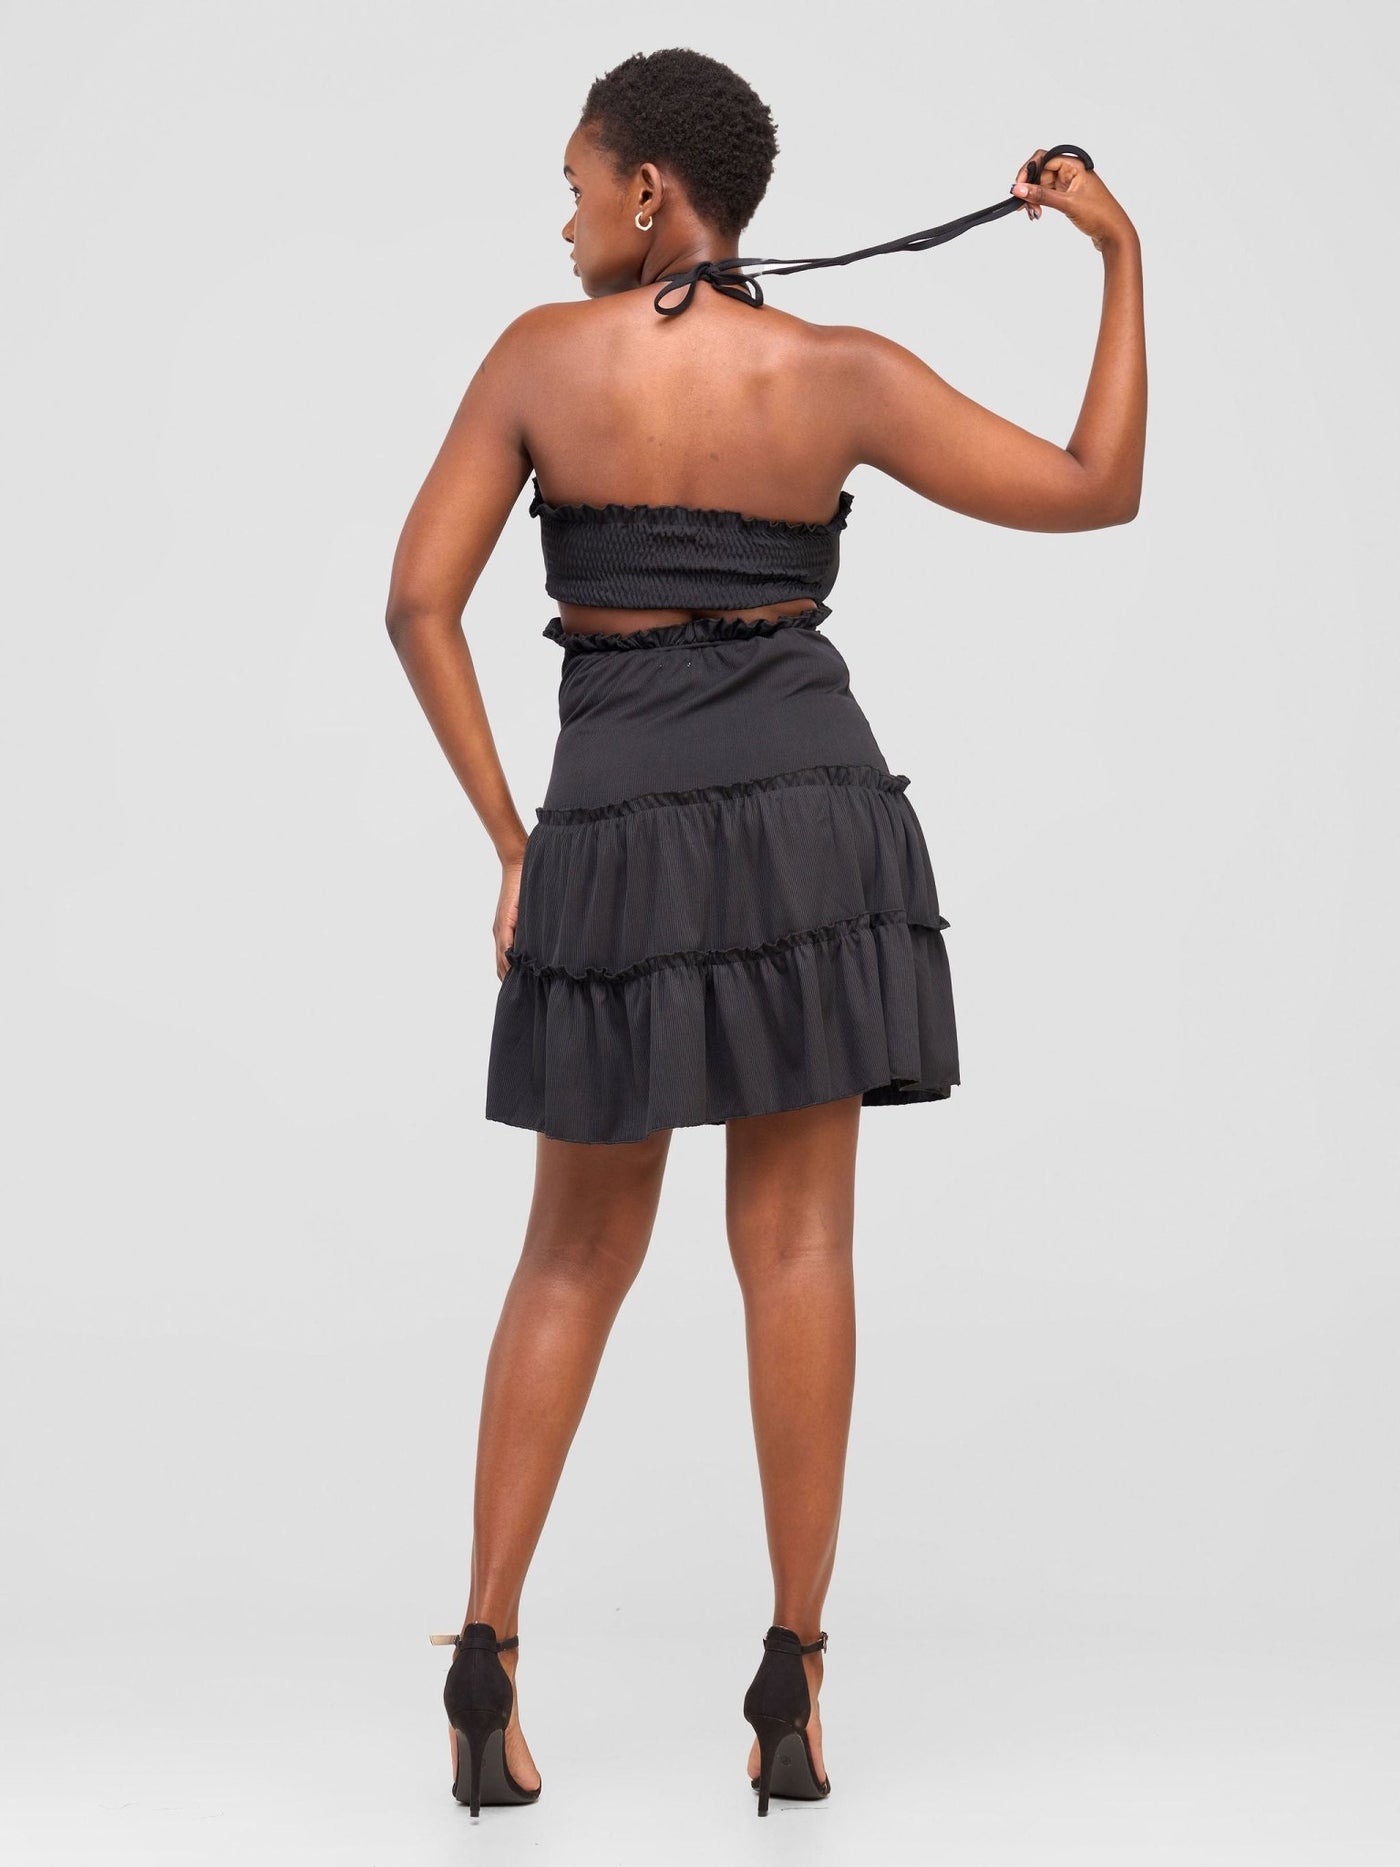 Anika Flirty Halter Dress With Bust Detail - Black - Shopzetu